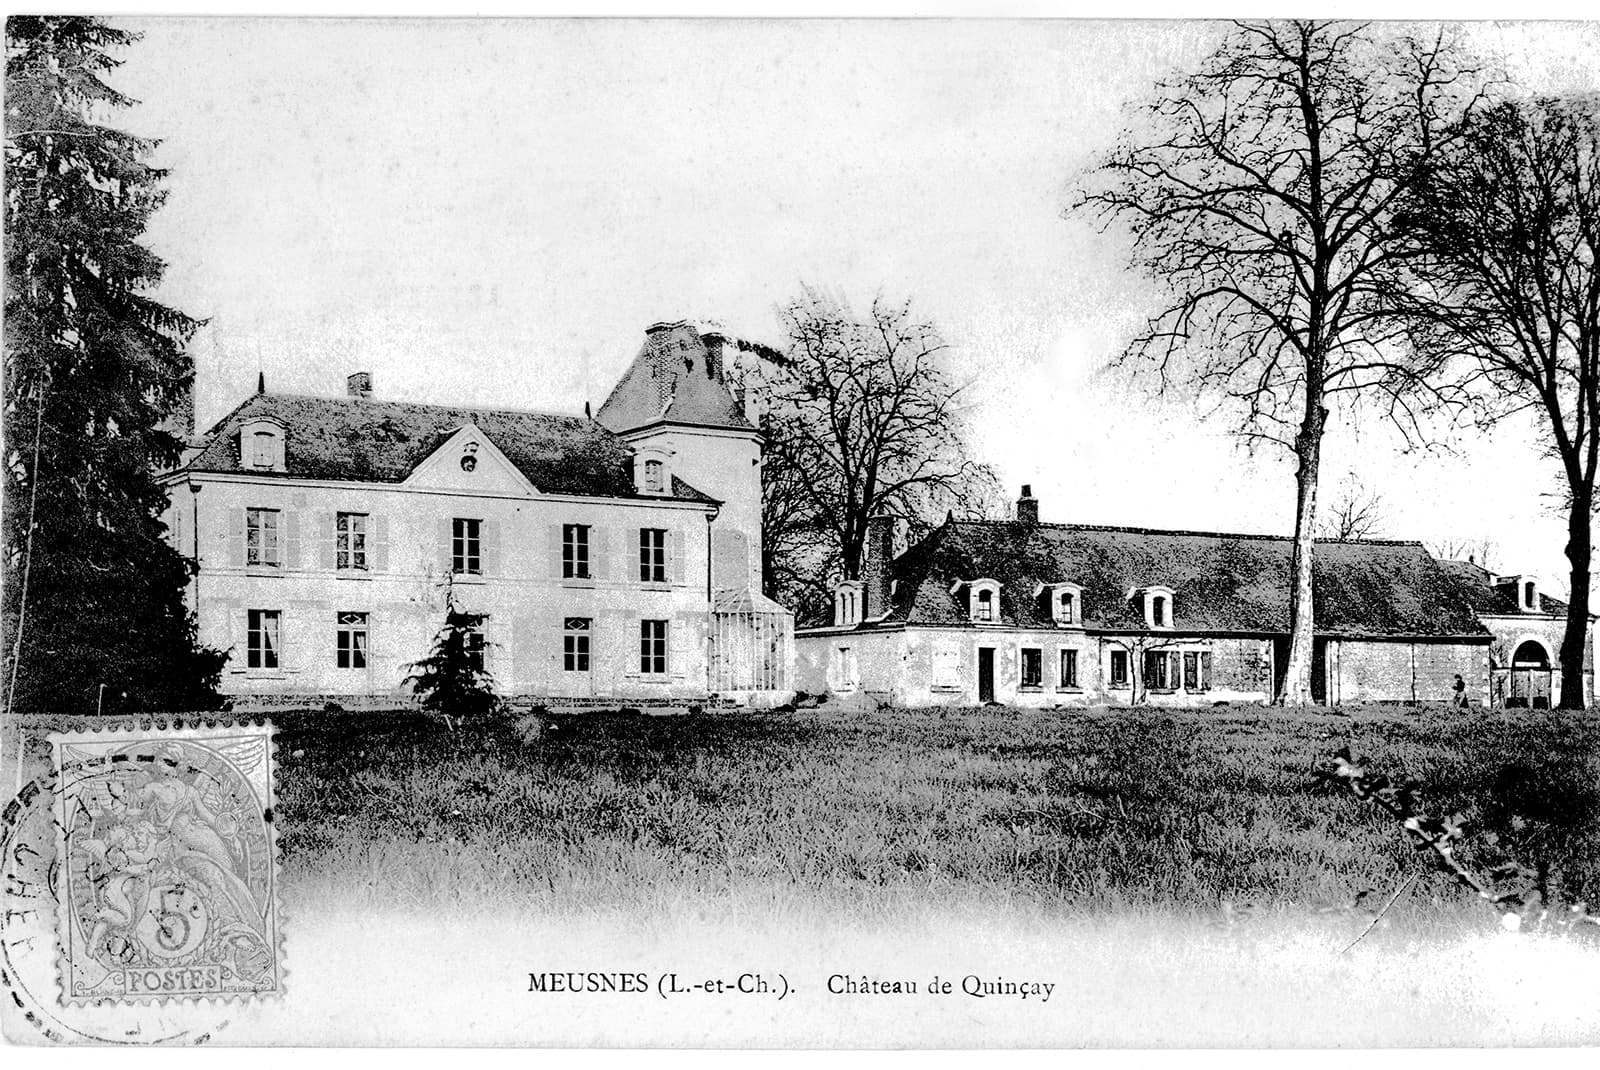 L'HISTOIRE - Château de Quinçay